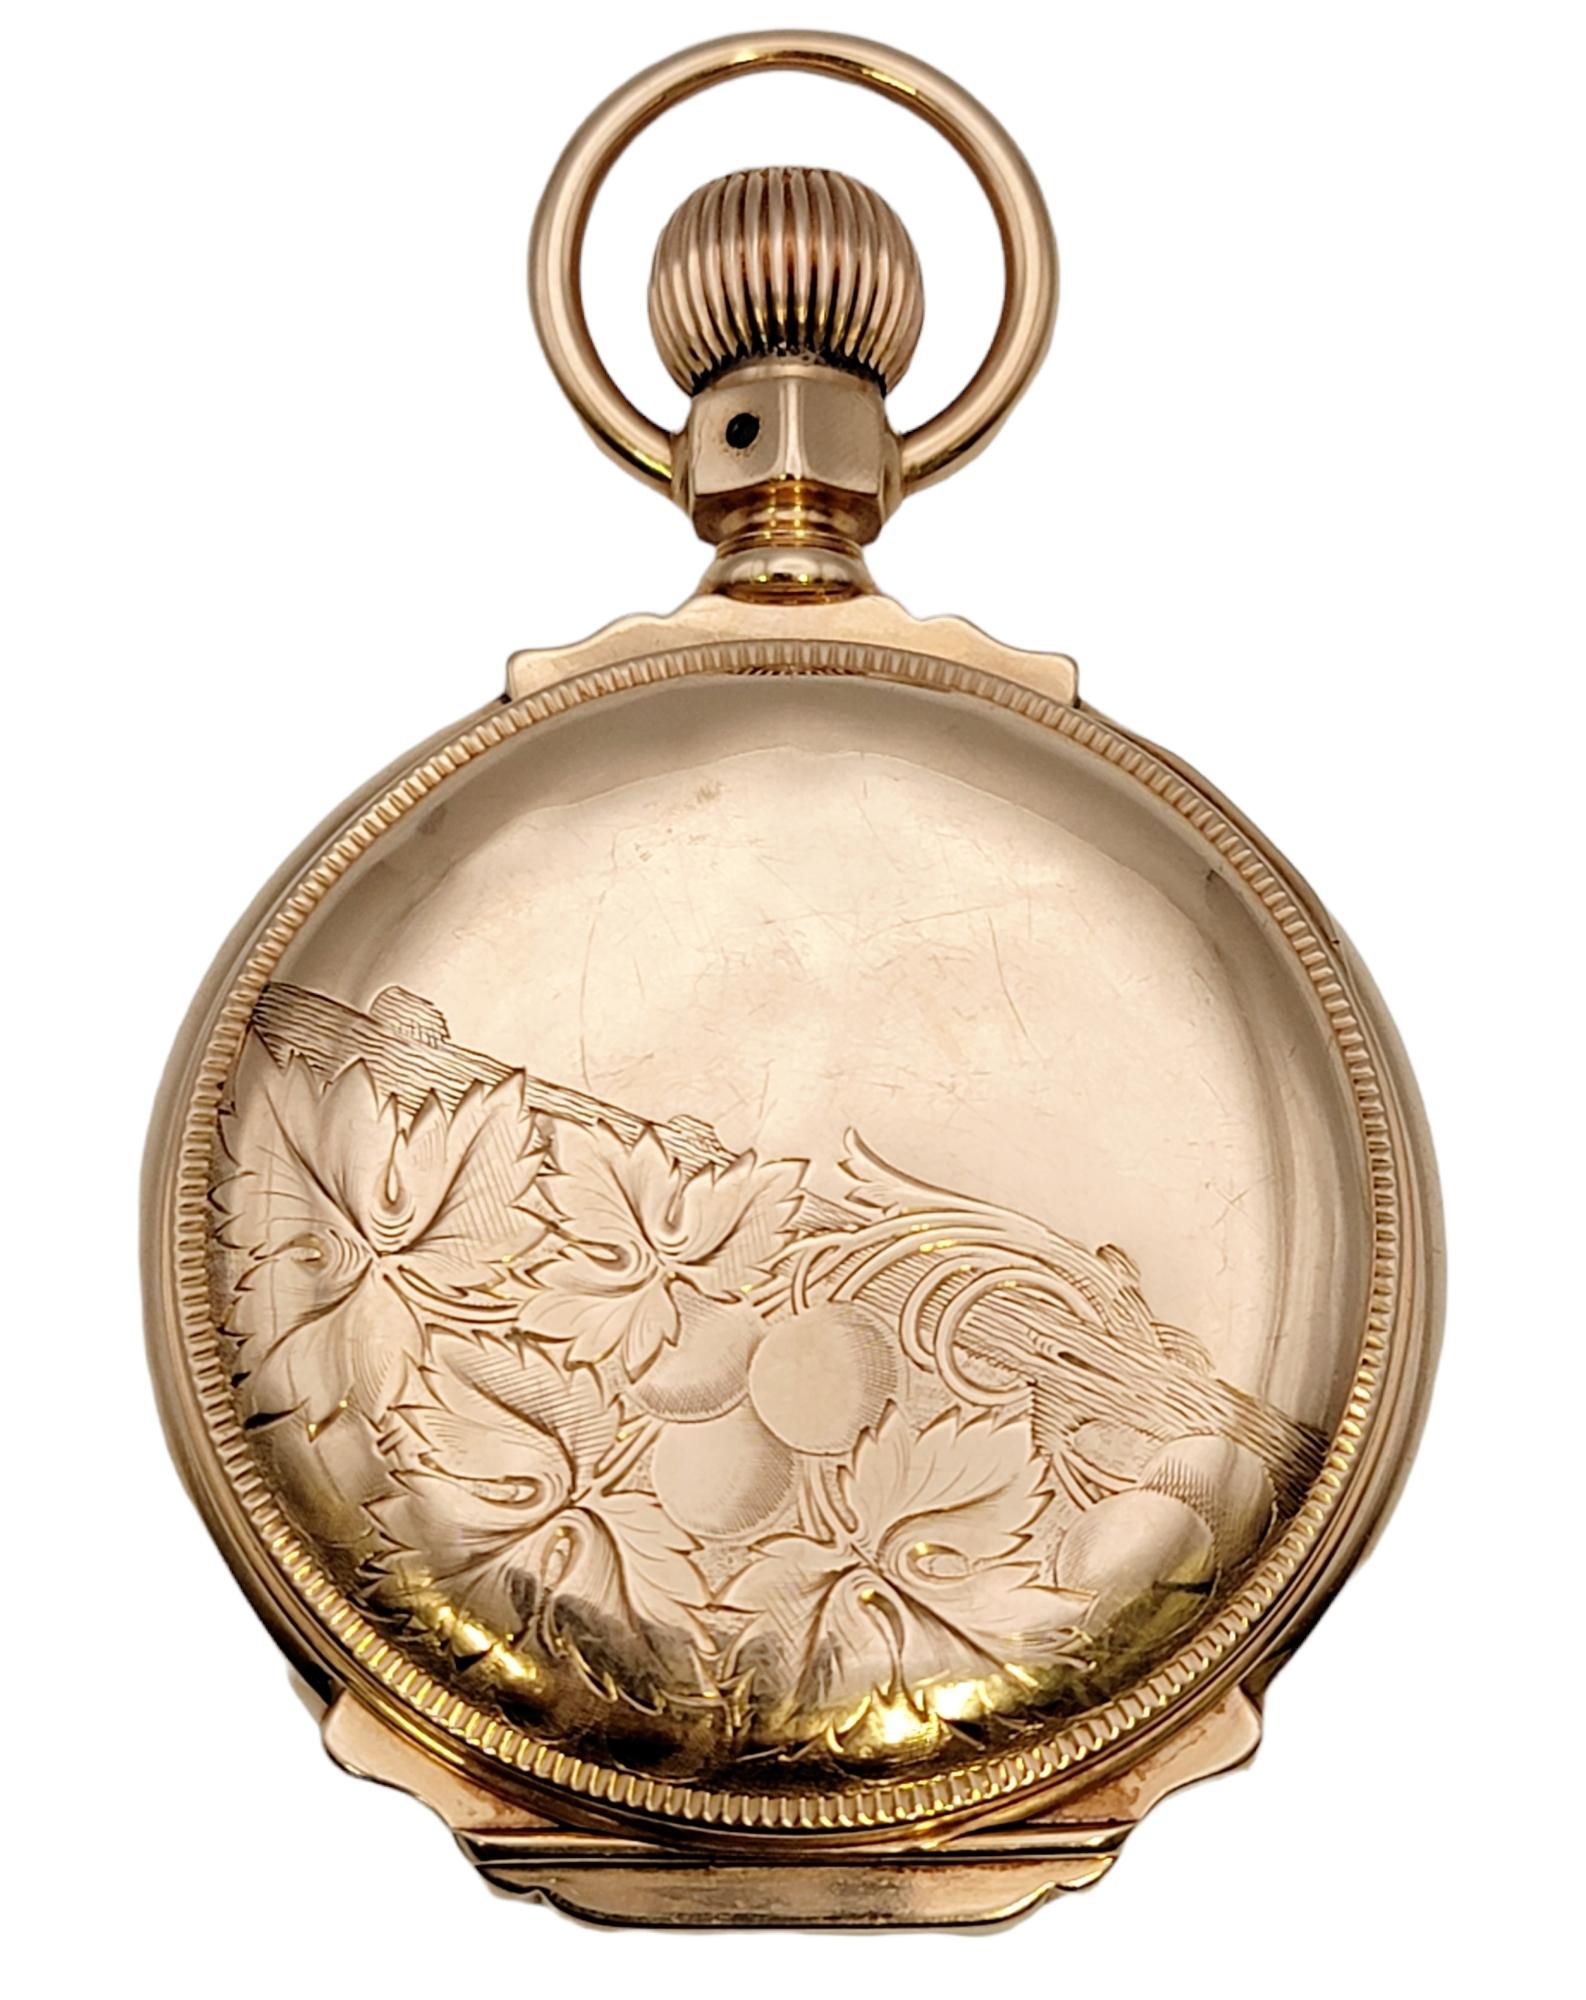 Diese seltene Vintage-Taschenuhr aus 14 Karat Gold von Waltham ist ein beeindruckendes Stück Geschichte. Der luxuriöse Zeitmesser aus massivem Gold ist mit exquisiten Details ausgestattet. Sie hat ein 46-mm-Gehäuse, ein rundes weißes Zifferblatt und